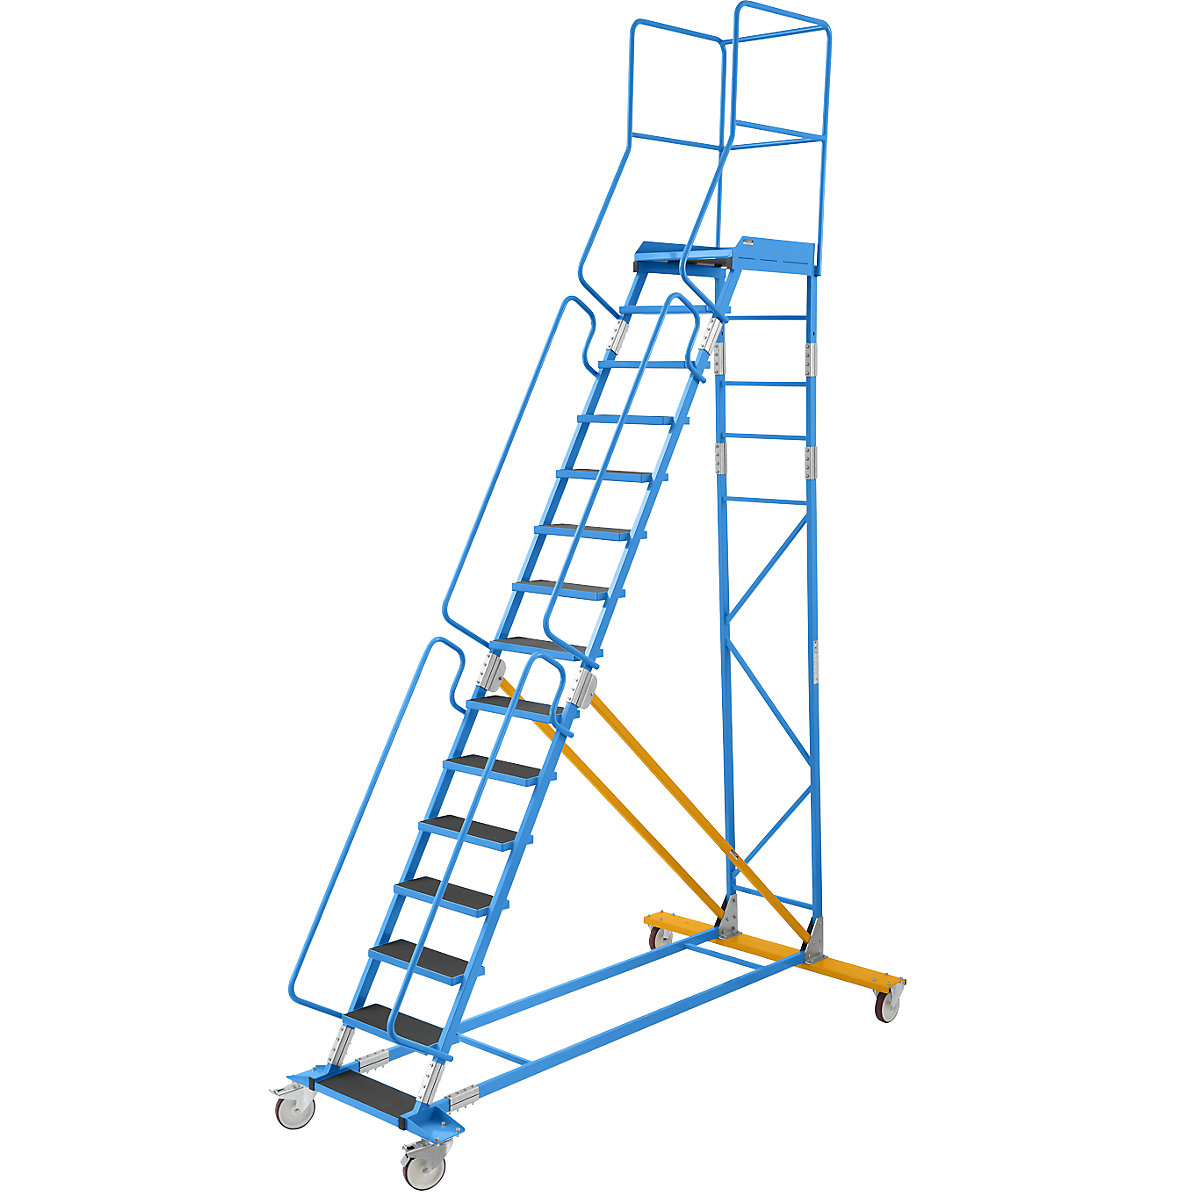 Escada de plataforma móvel – eurokraft pro, encaixe de degrau em borracha estriada, 15 degraus-18